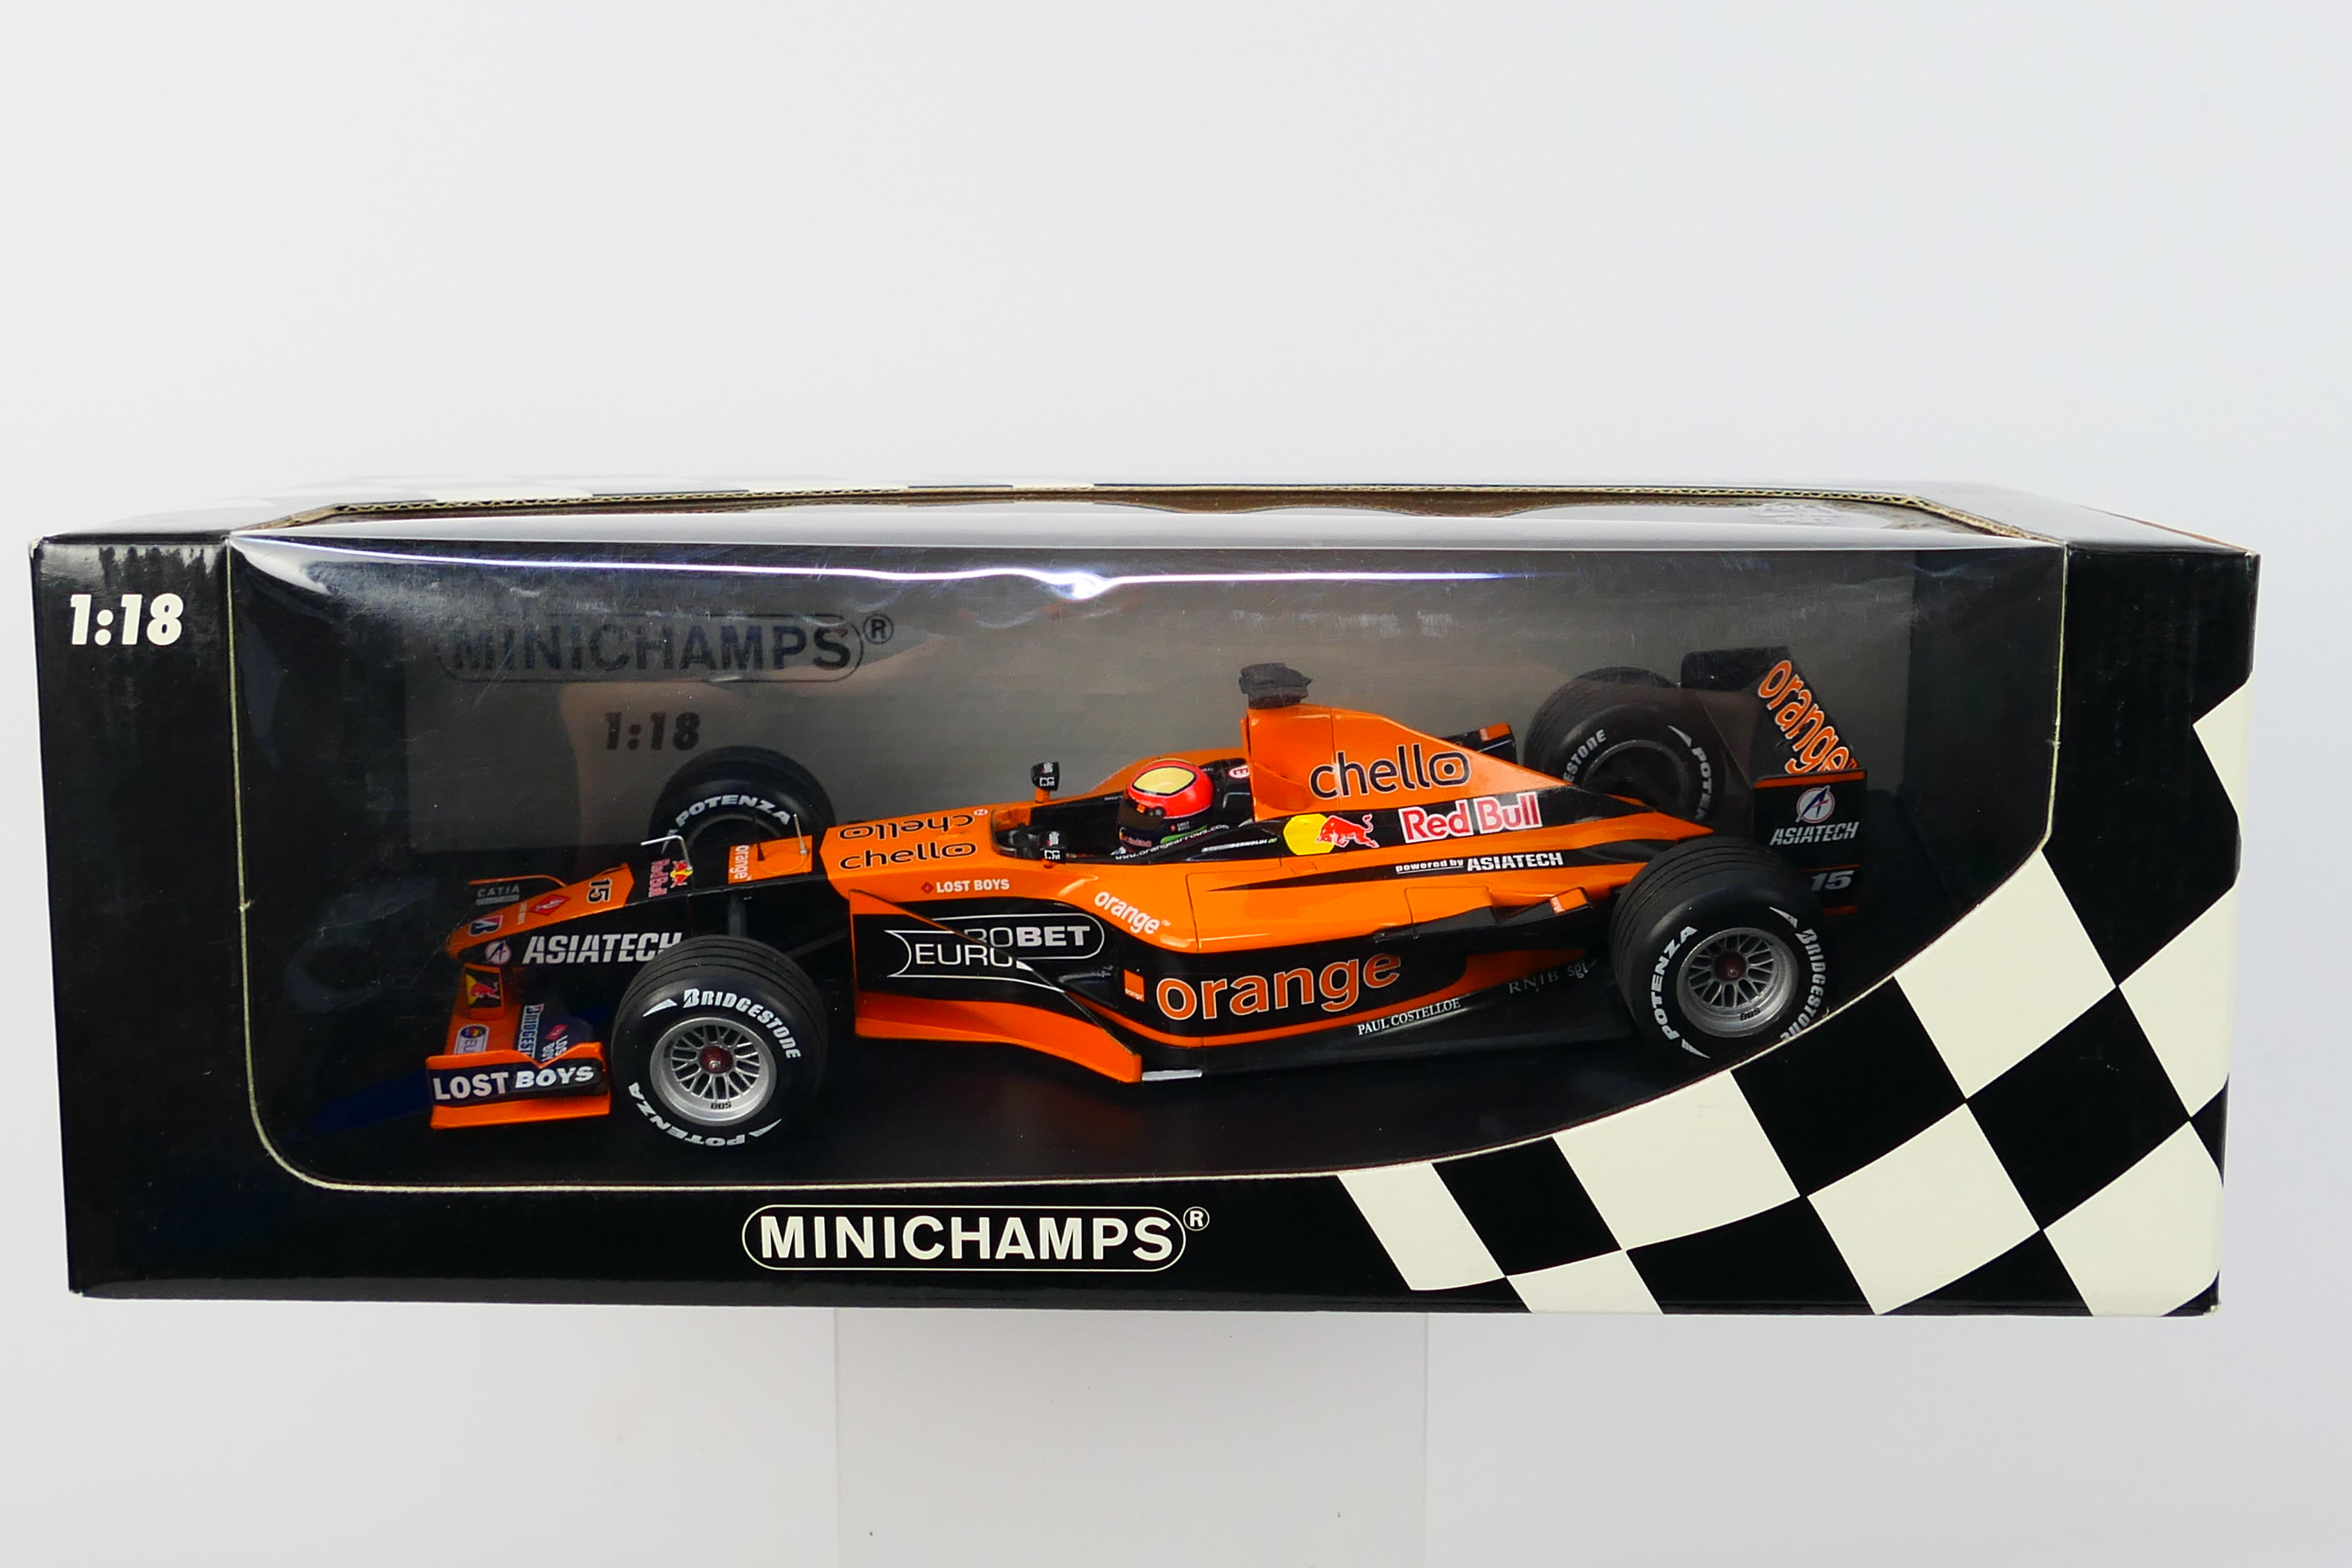 Minichamps- A boxed 1:18 scale Orange Arrows Asiatech A22 Enrique Bernoldi car which appears Mint